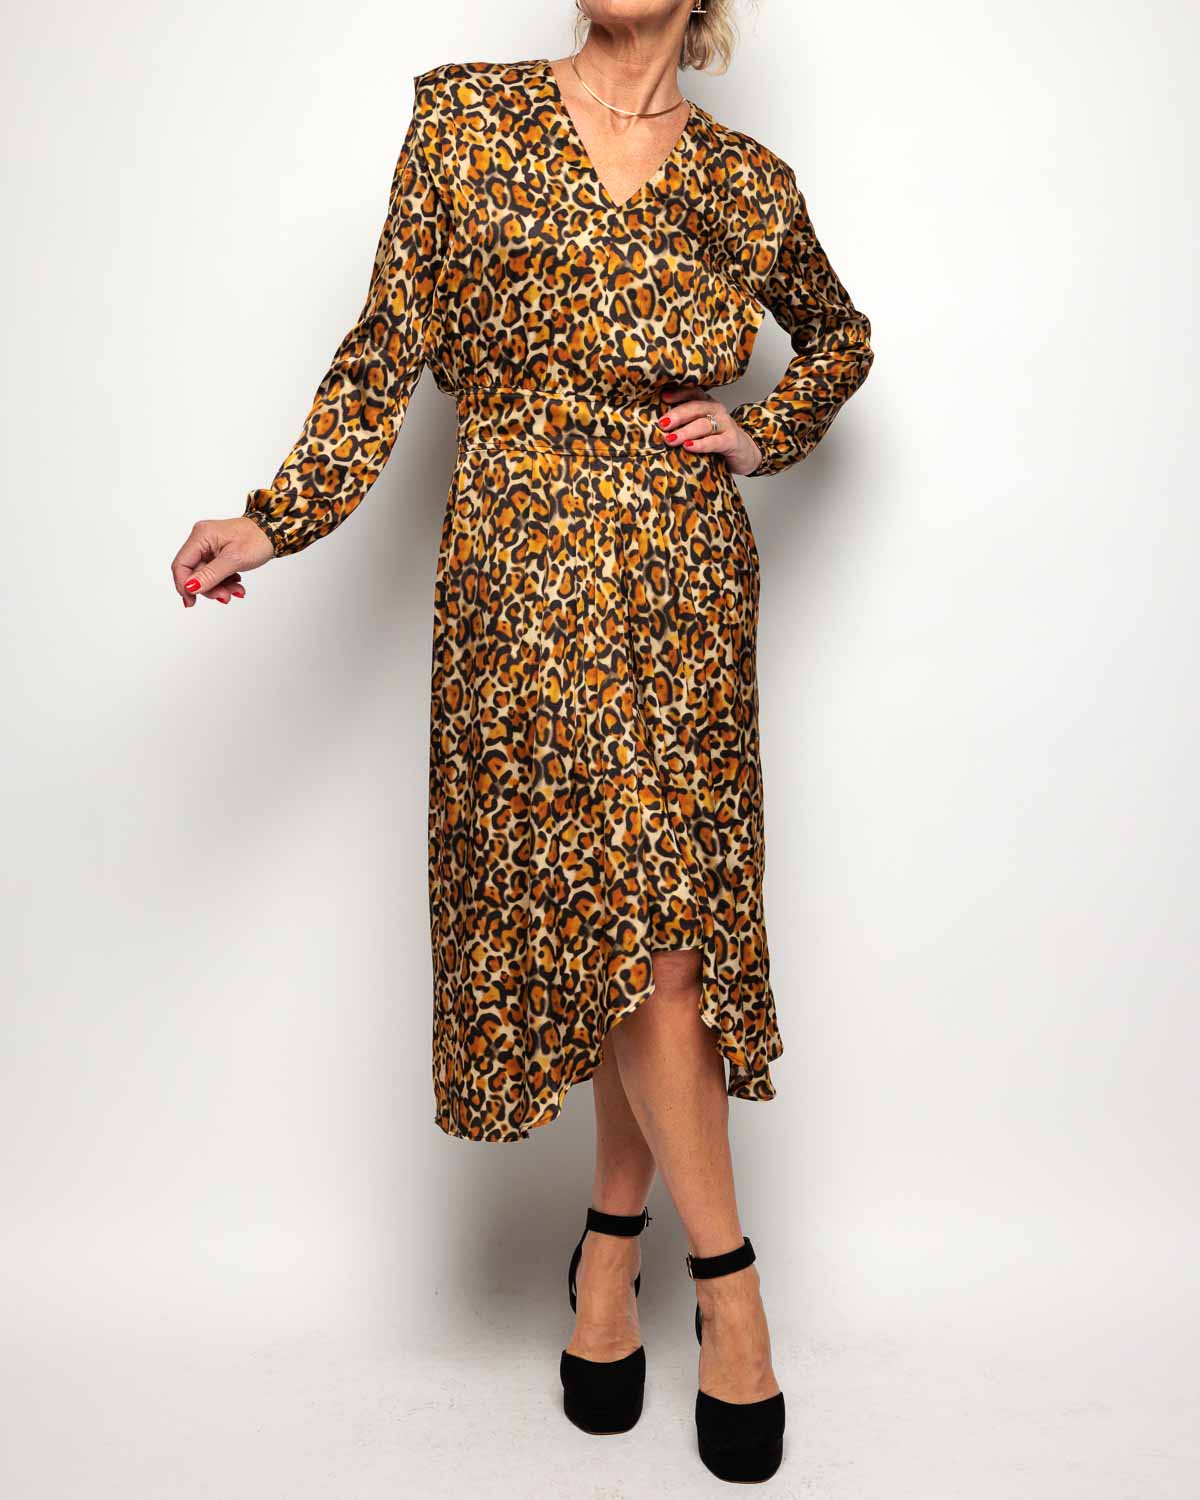 Bellerose Annie Dress in Leopard Print